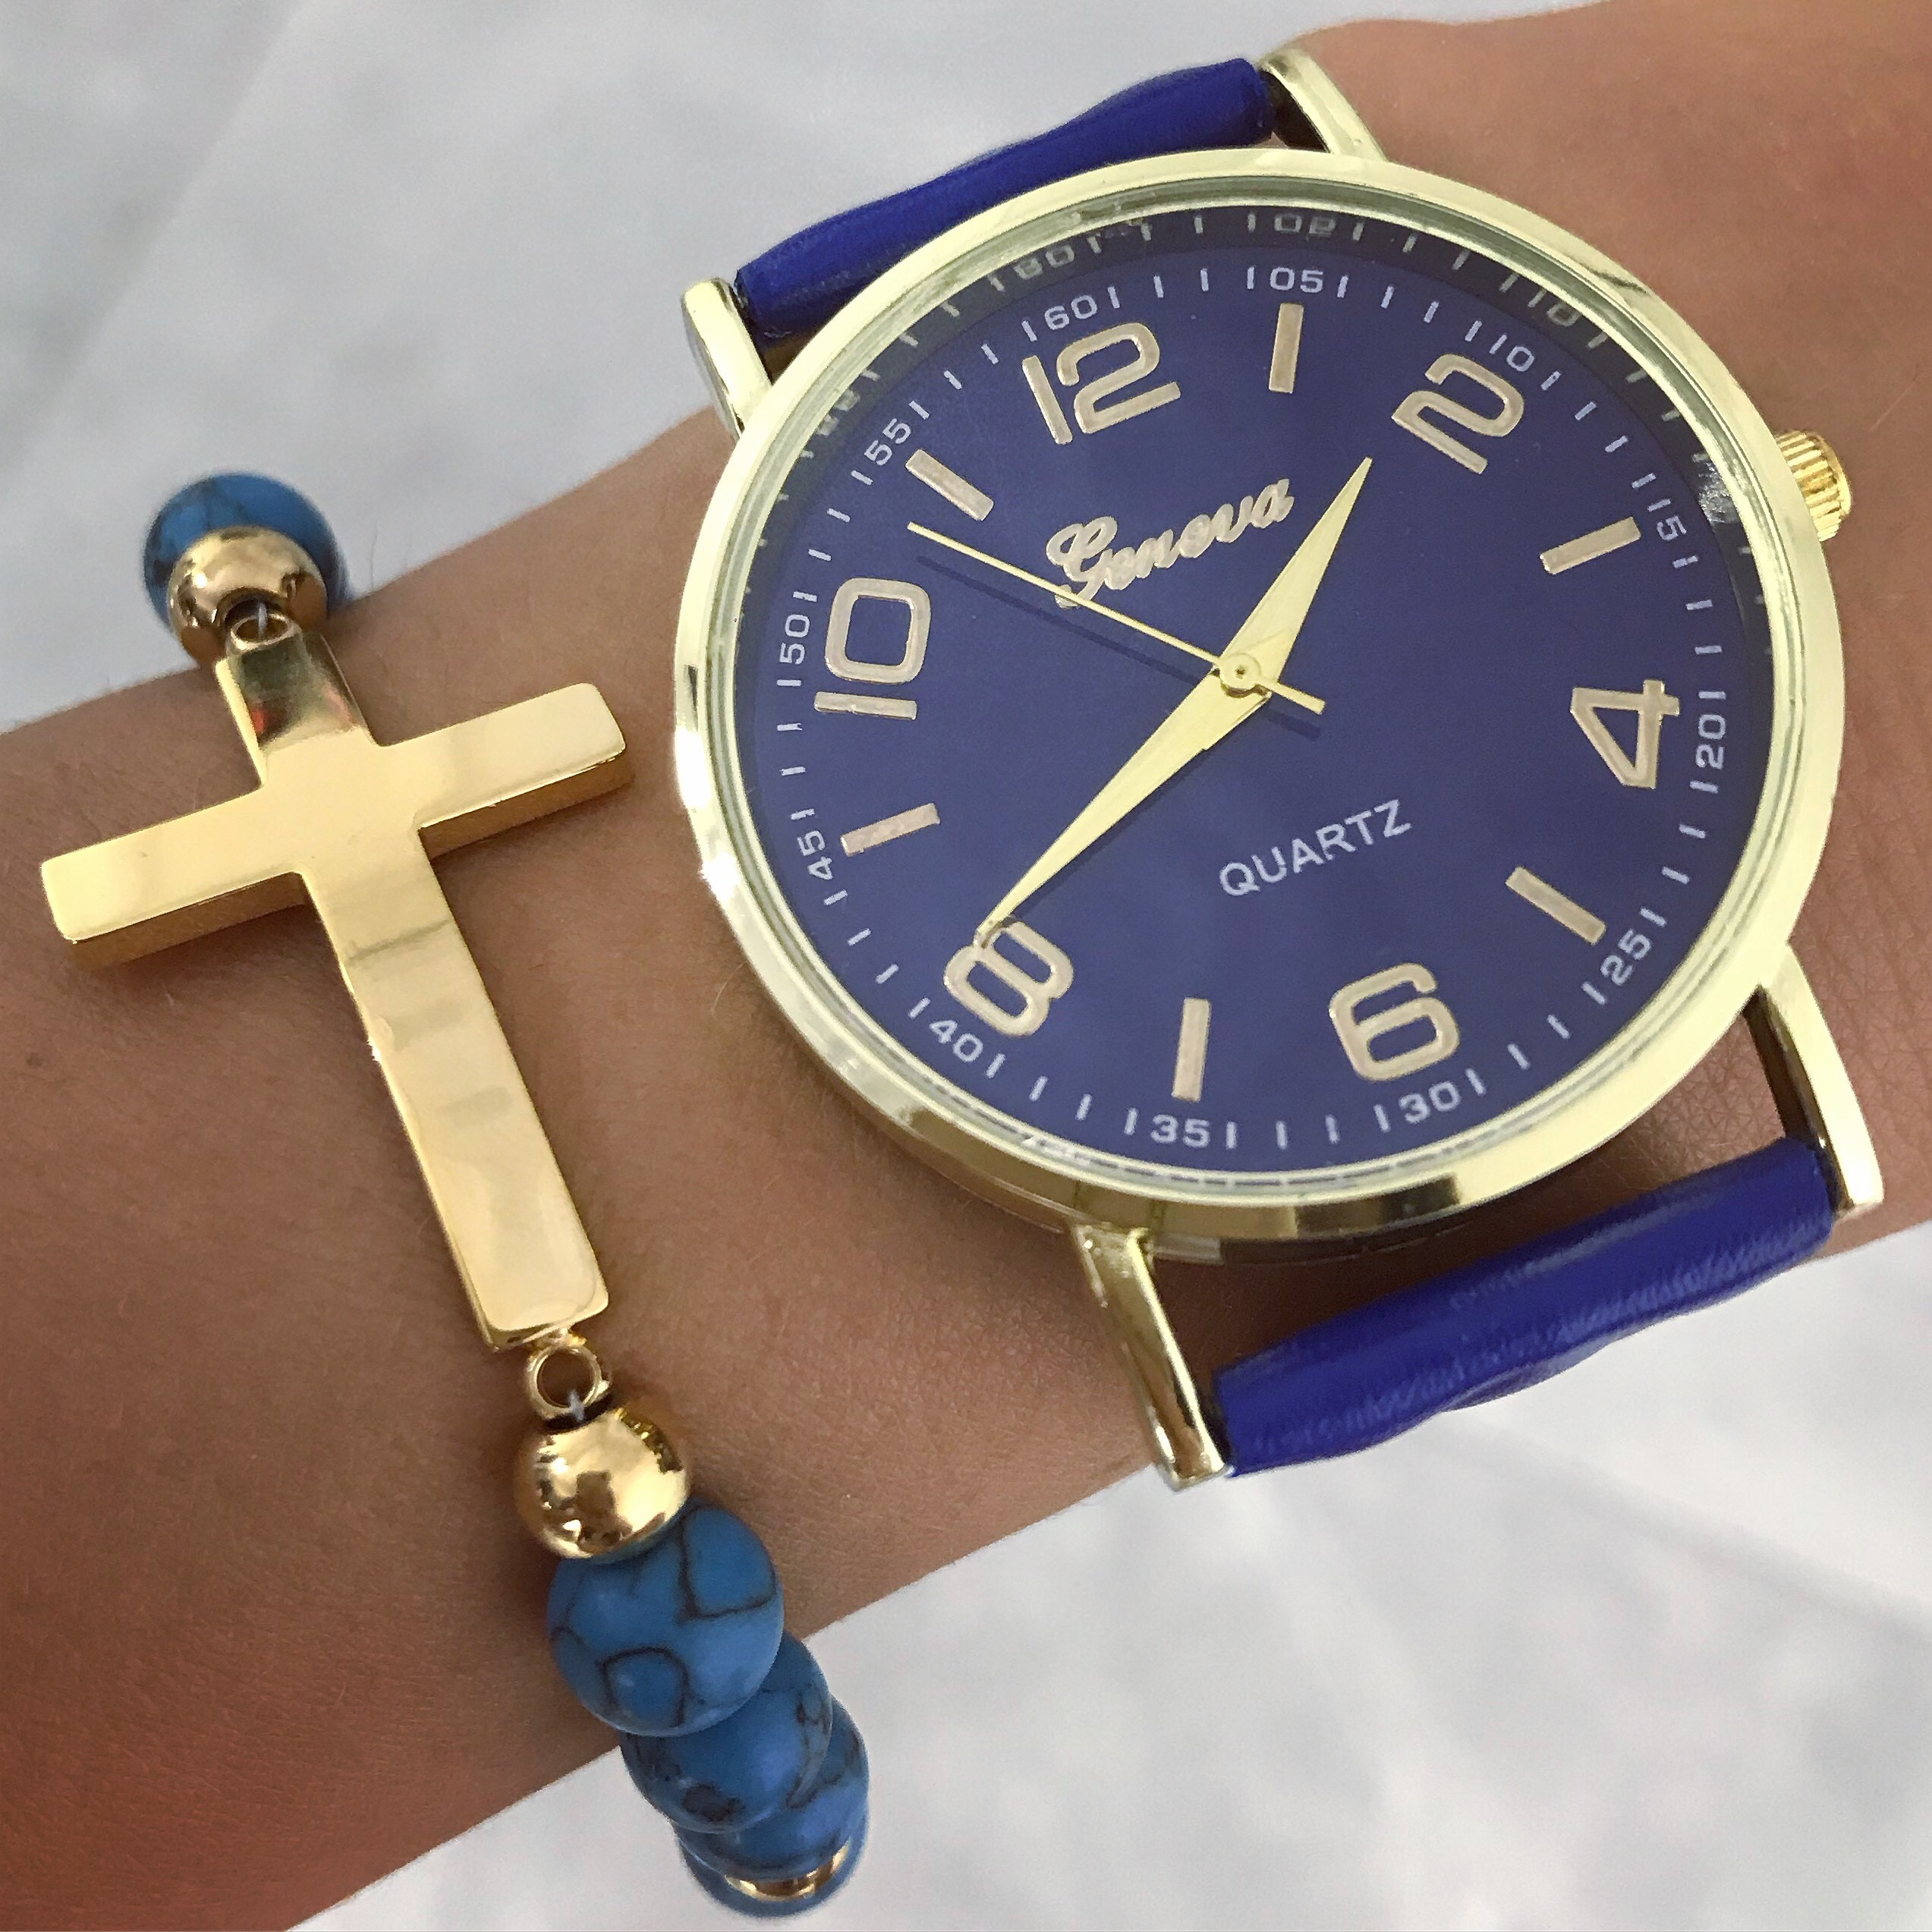 Dámske modré hodinky